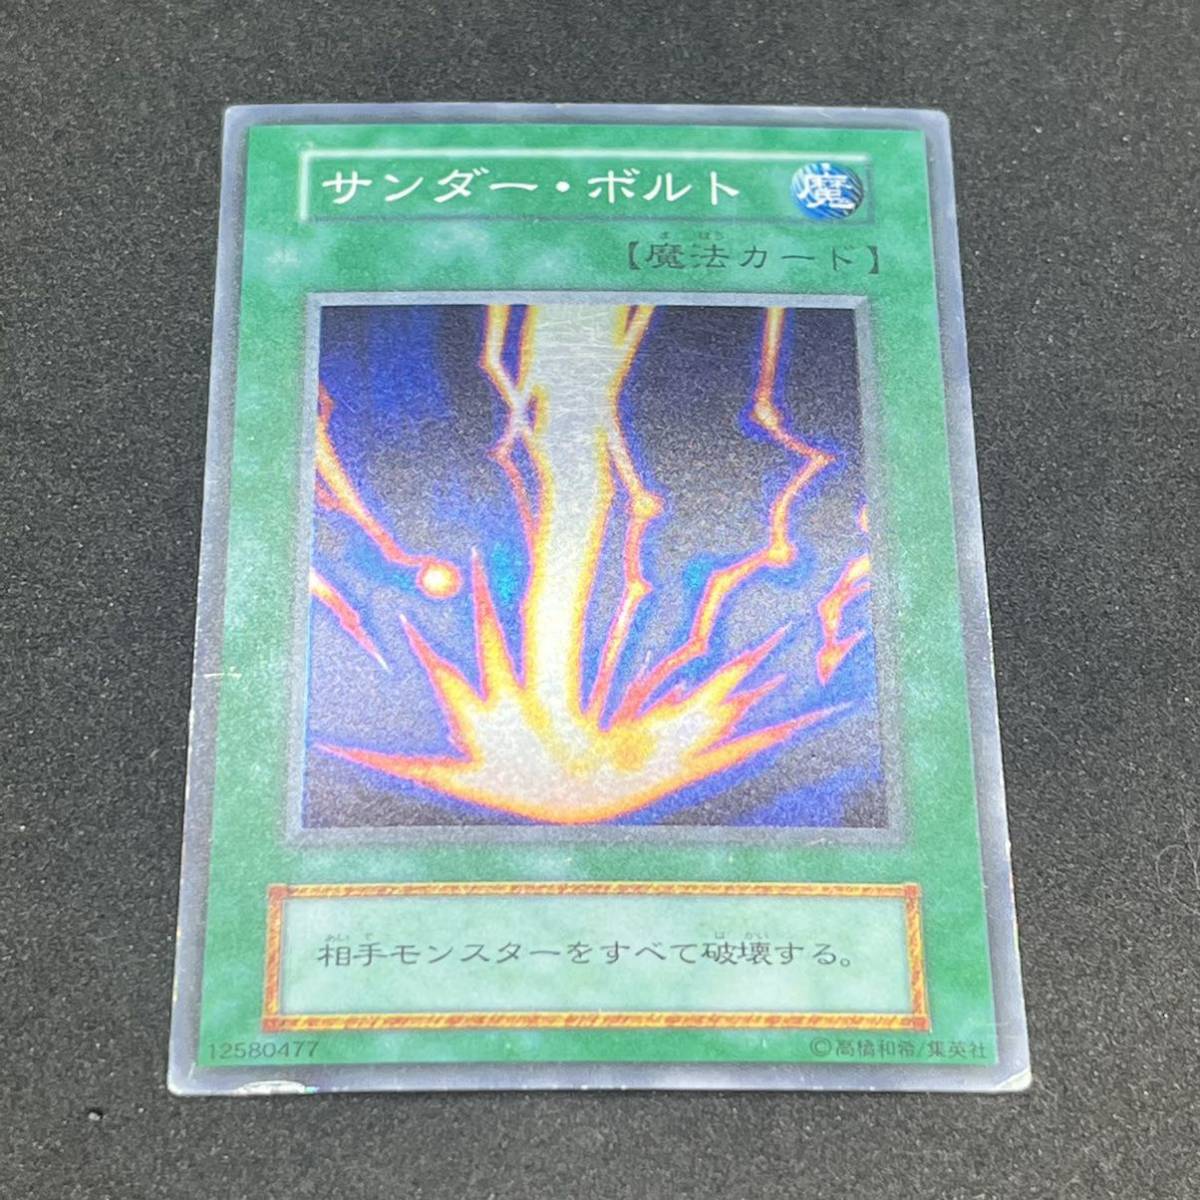 サンダー・ボルト スーパーレア /遊戯王カード TCG(トレーディングカードゲーム)